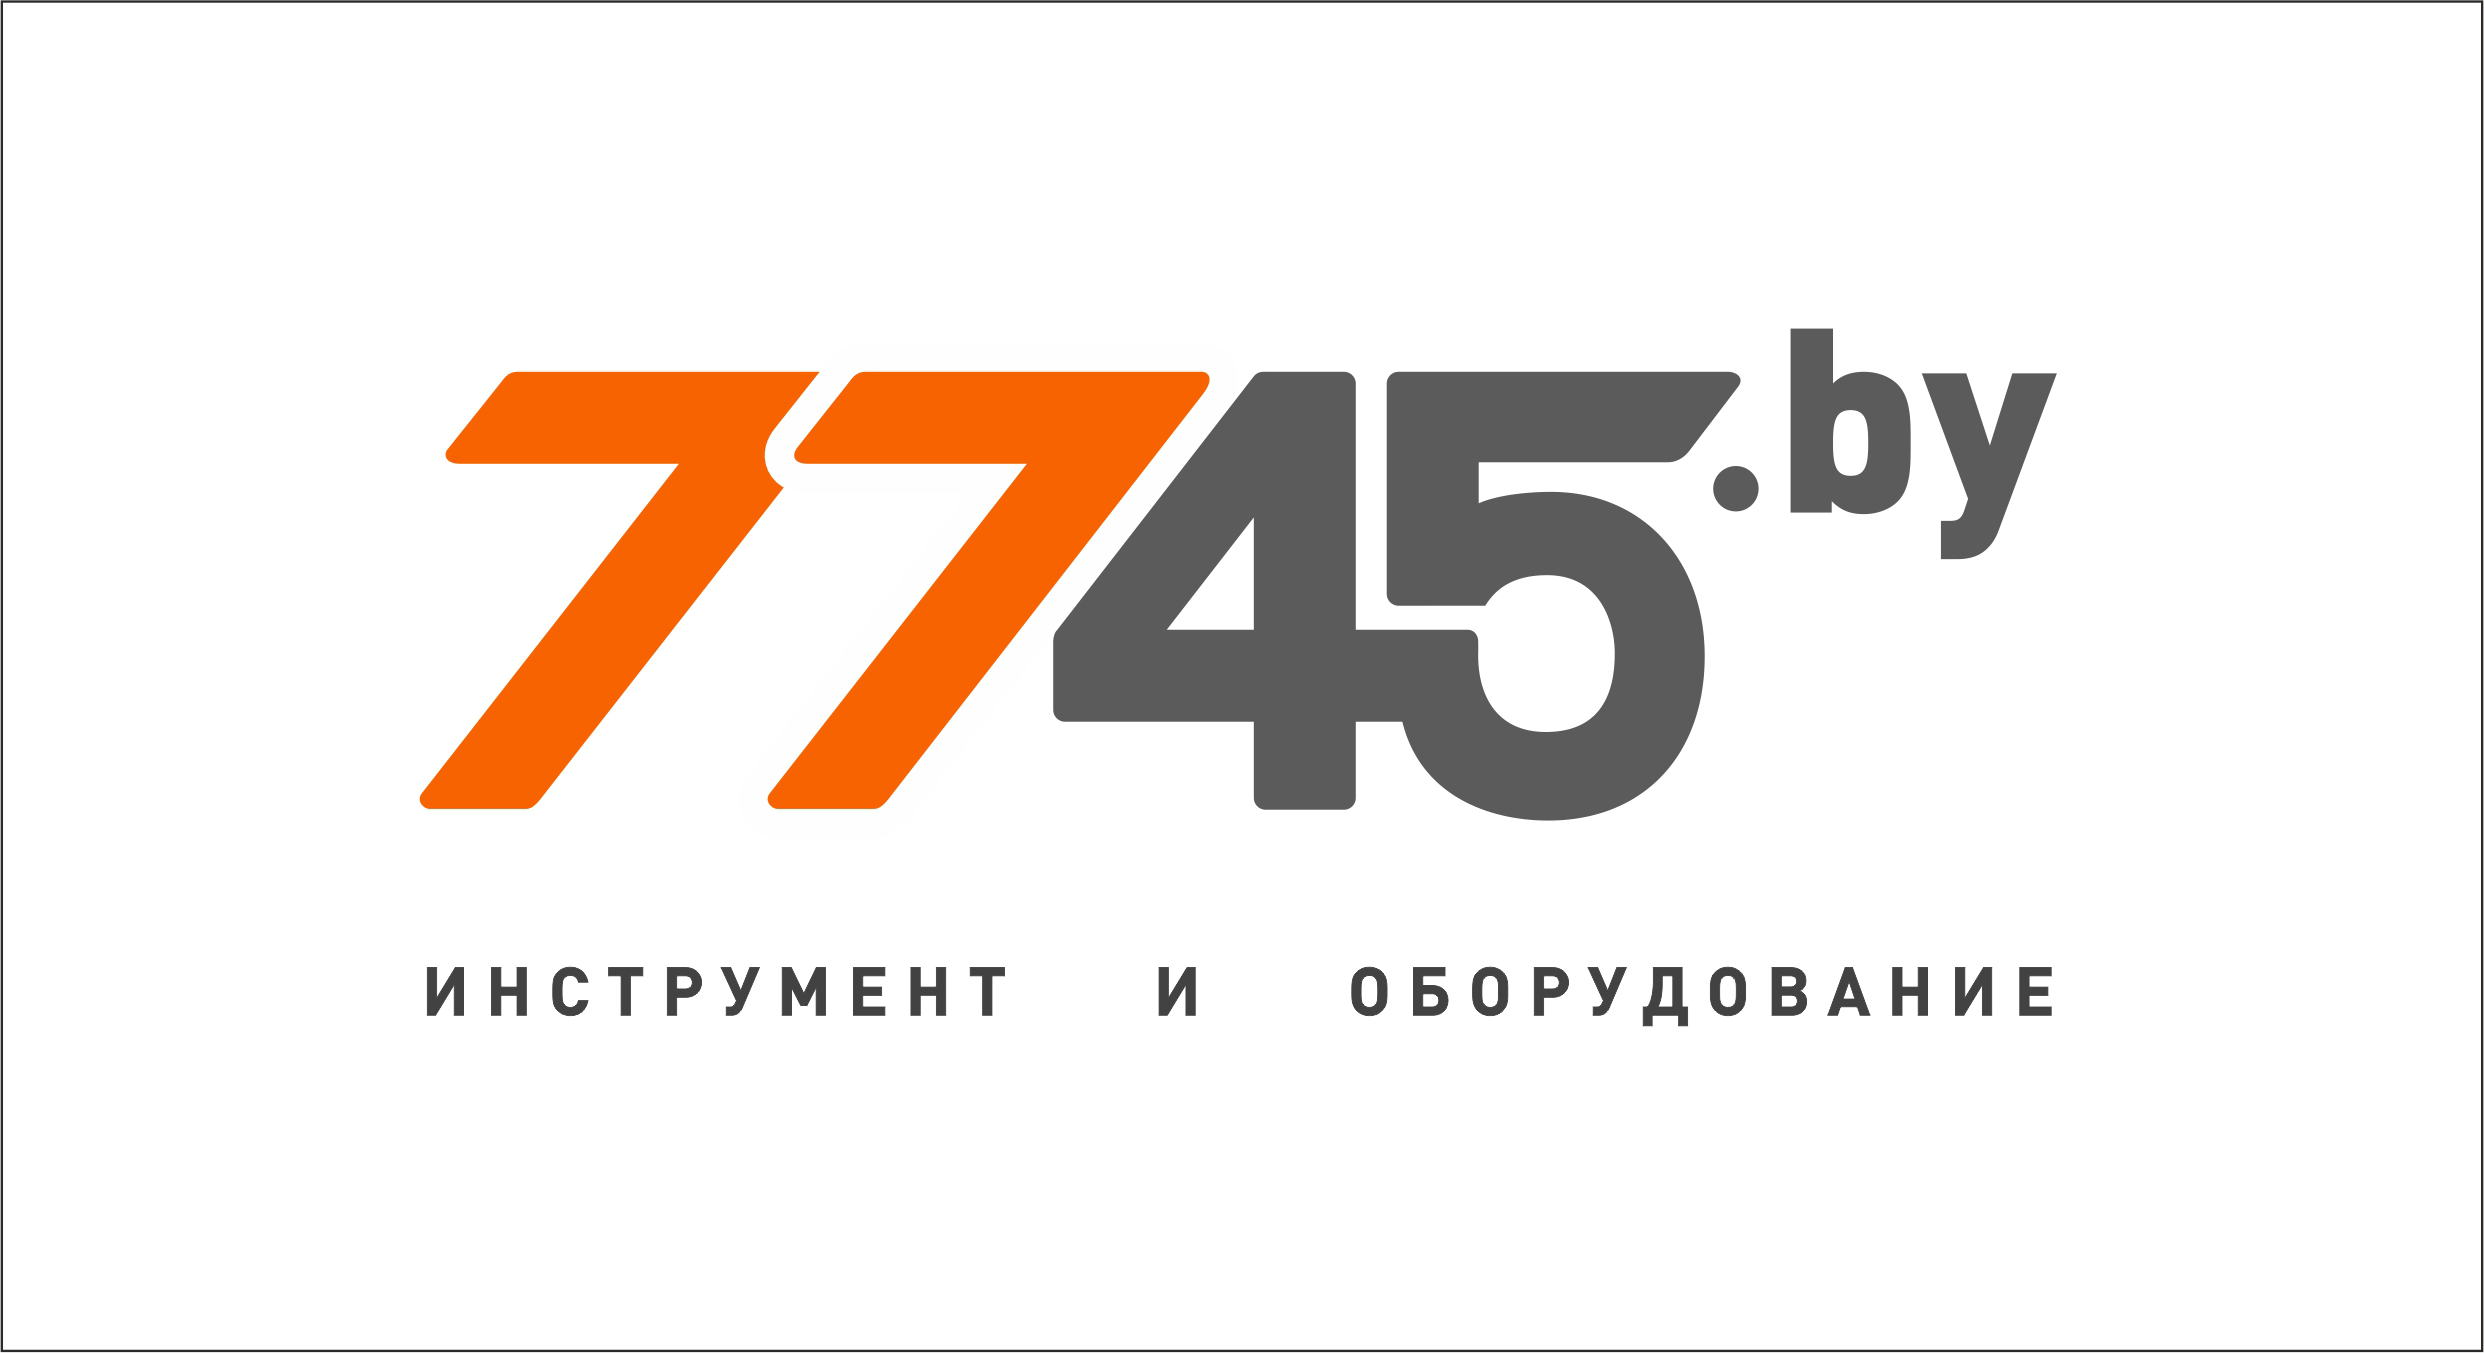 7745 Бу Интернет Магазин Солигорск